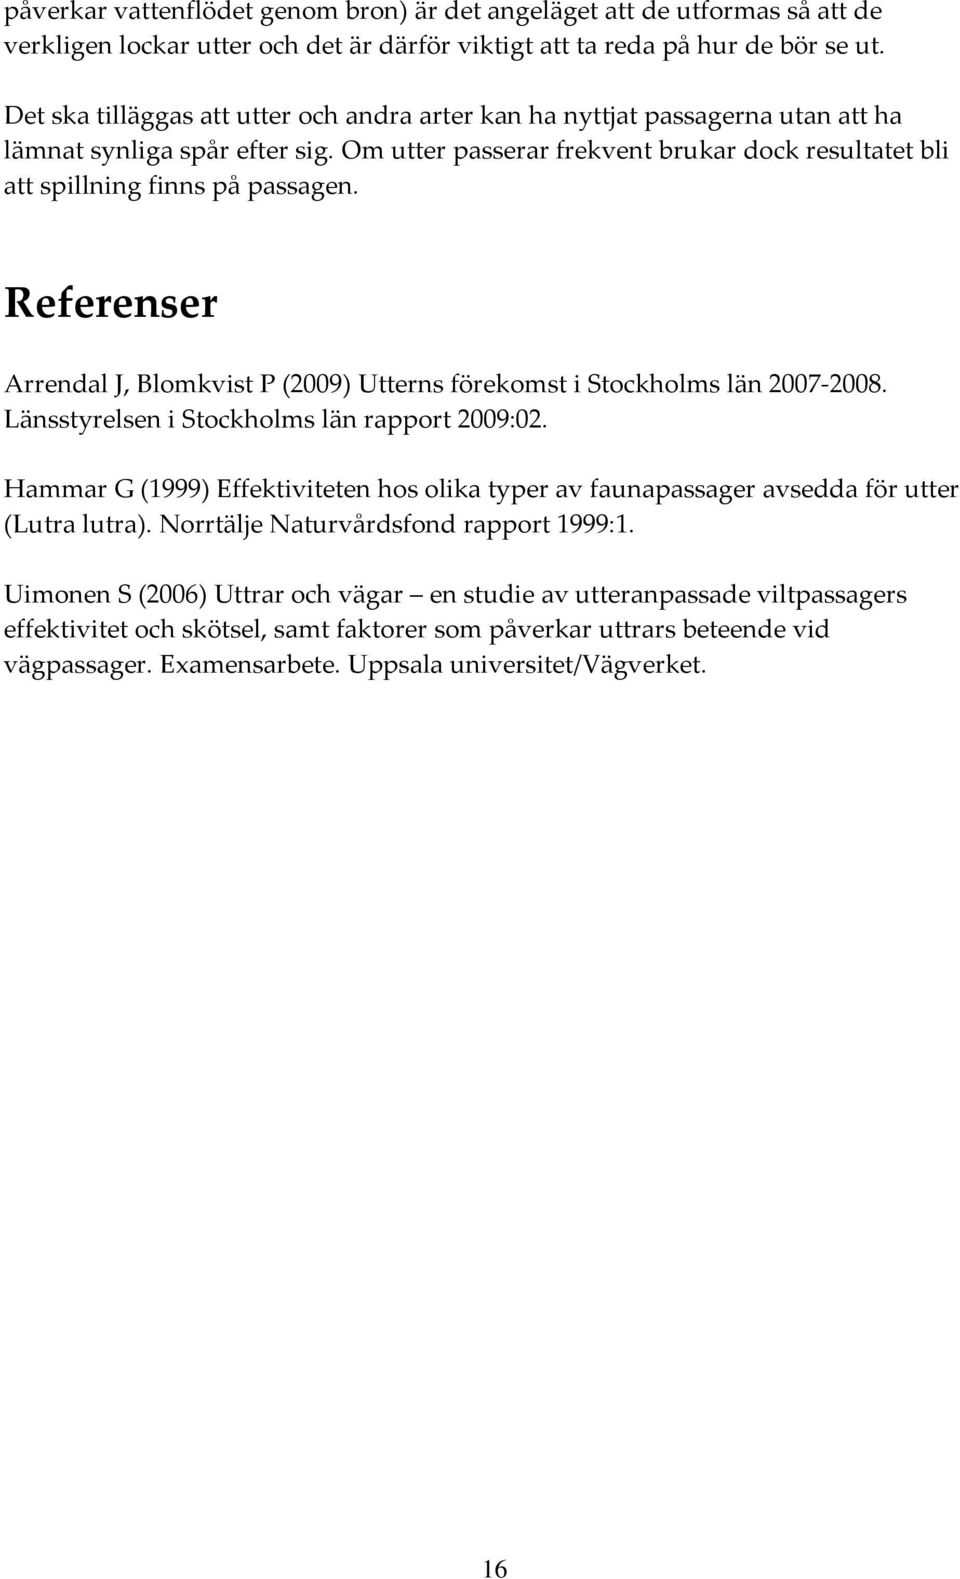 Referenser Arrendal J, Blomkvist P (2009) Utterns förekomst i Stockholms län 2007 2008. Länsstyrelsen i Stockholms län rapport 2009:02.